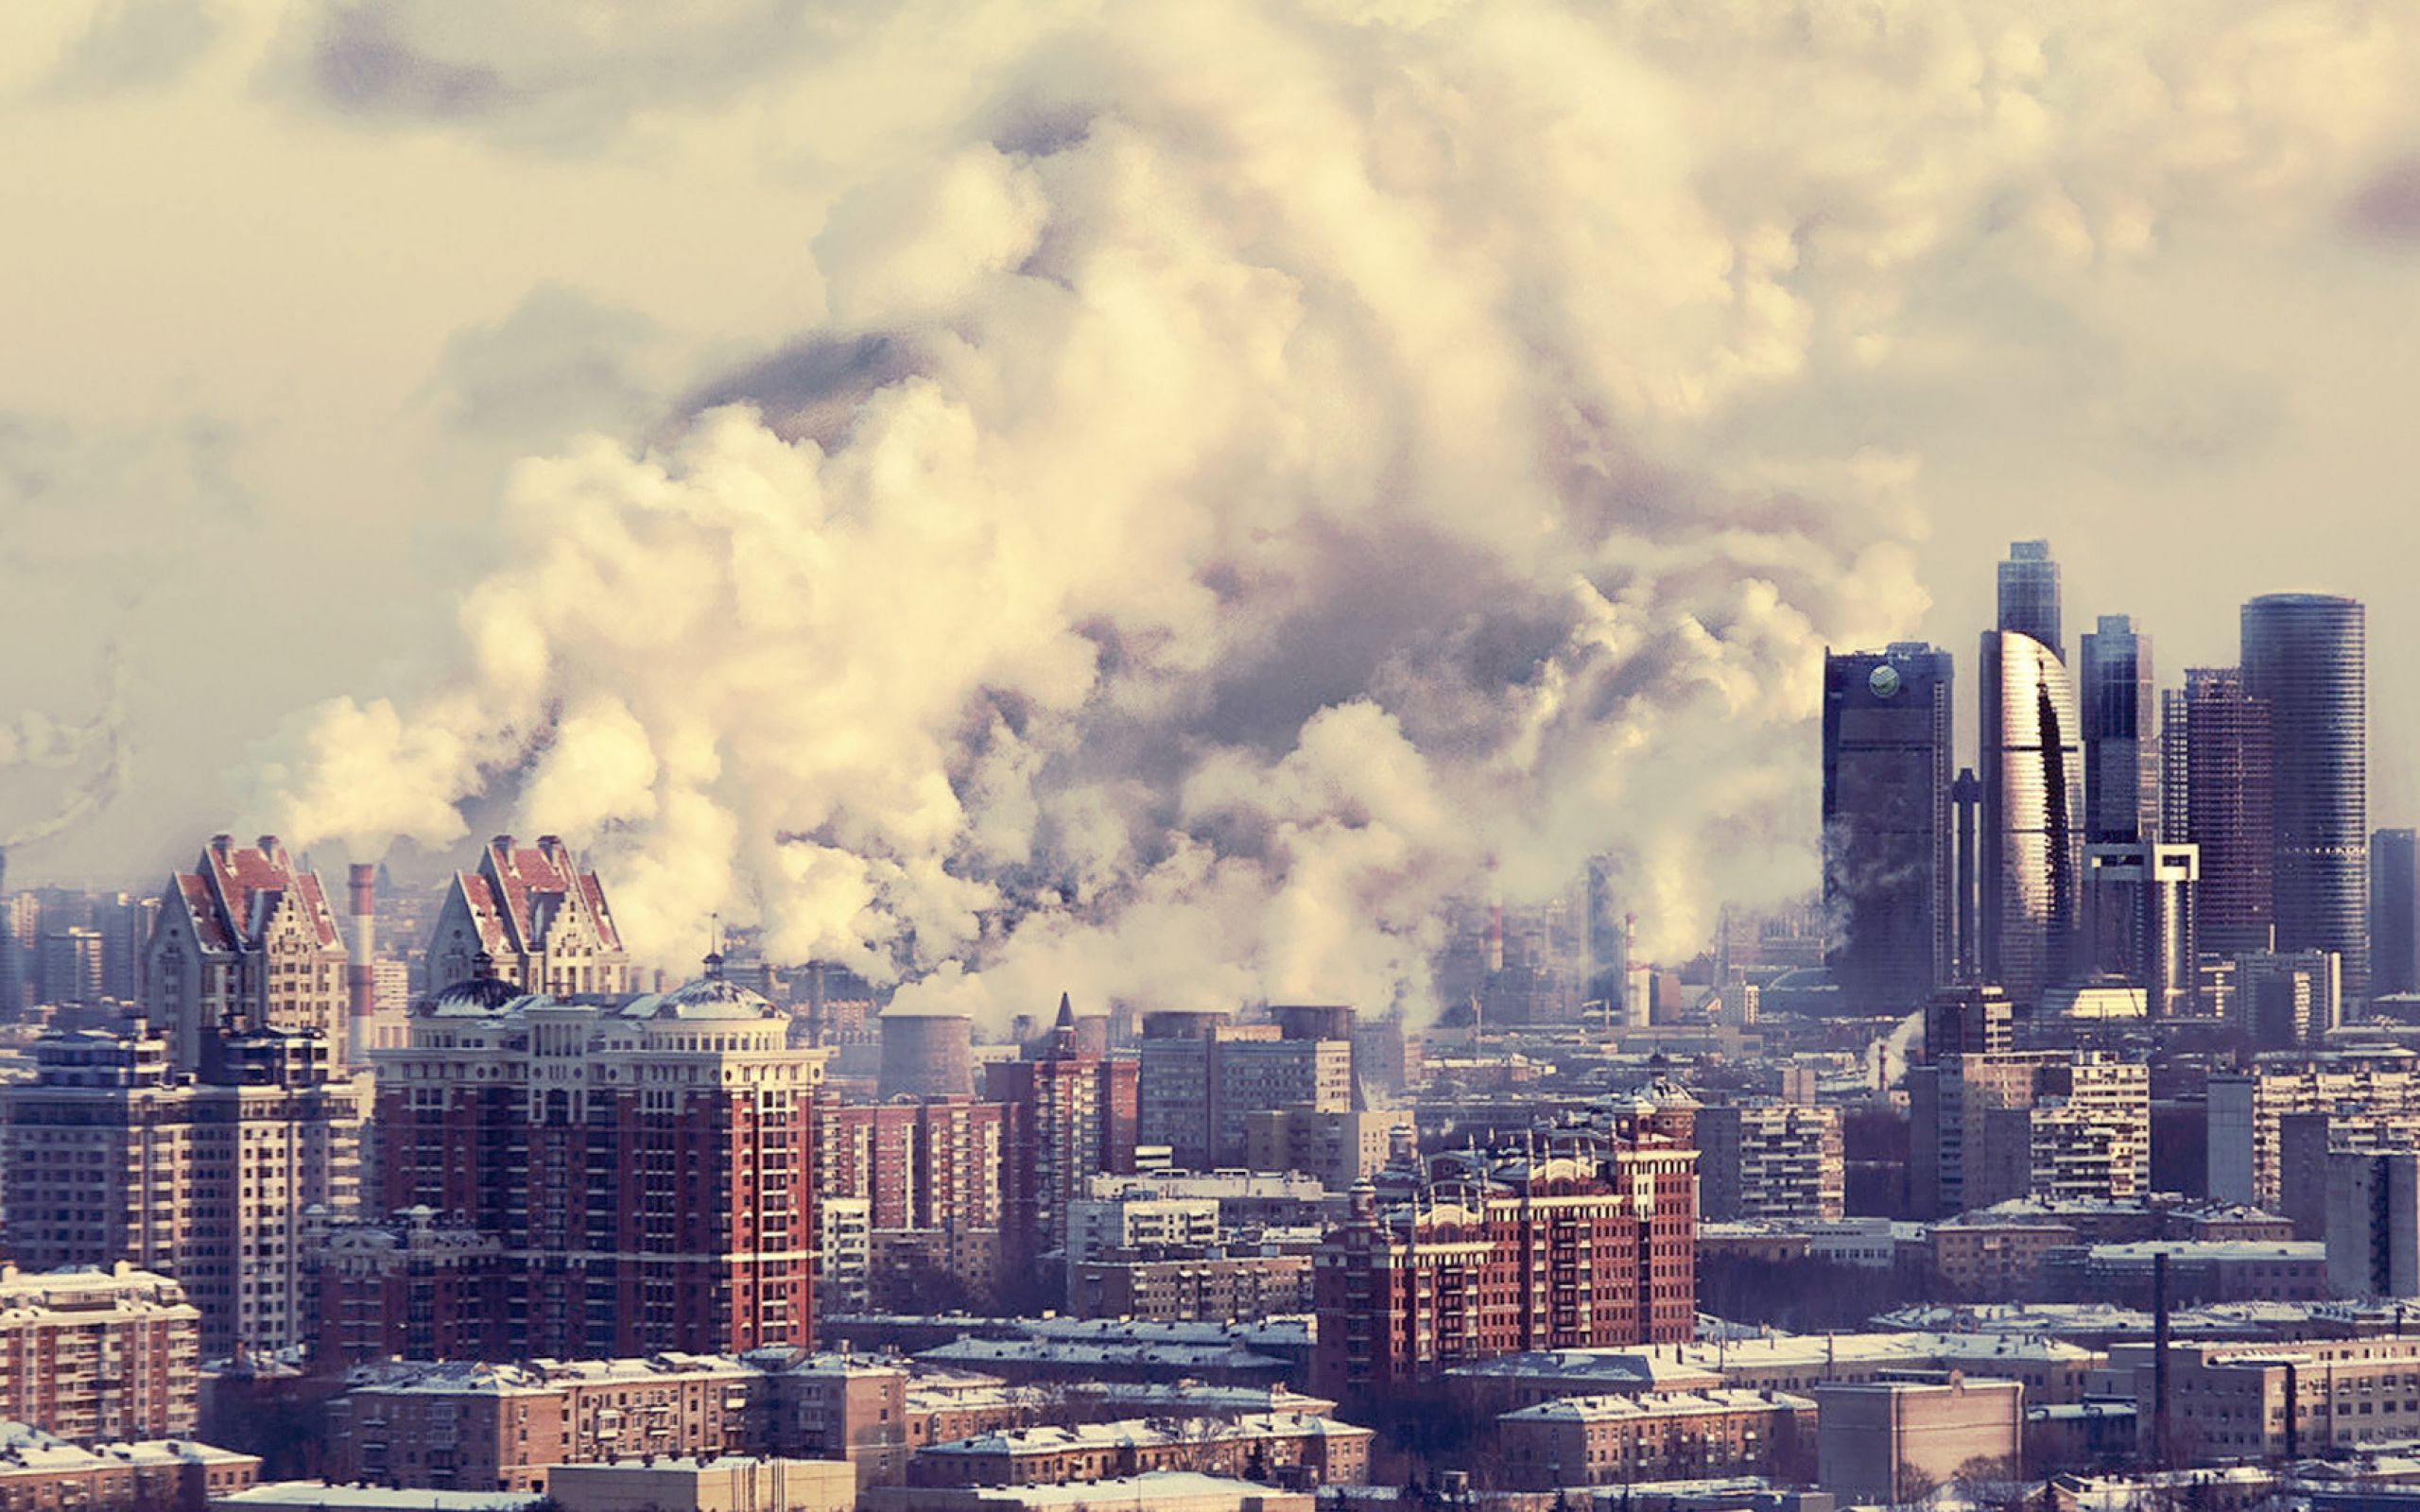 Сити смок. Москва Сити смог. Загрязнение воздуха в городе. Город в дыму. Загрязнение атмосферы в городах.